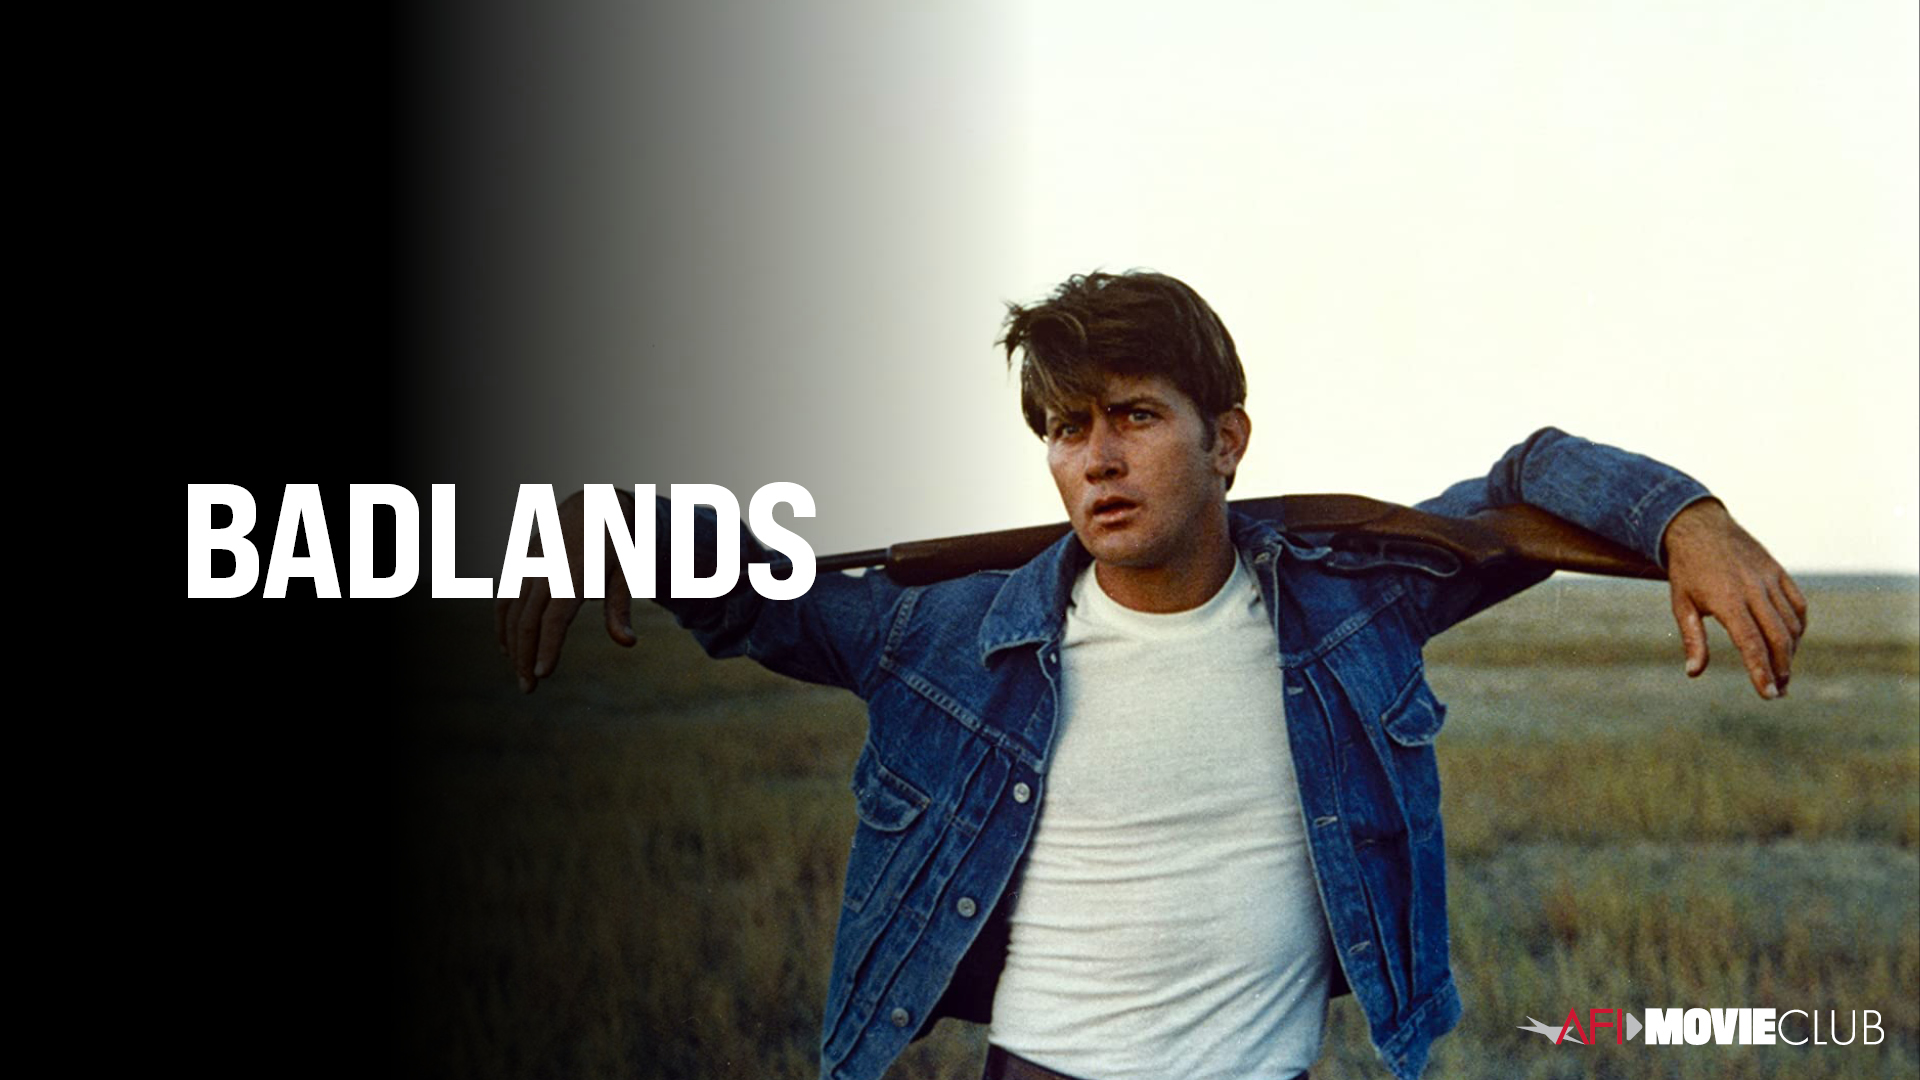 Badlands Film Still - Martin Sheen